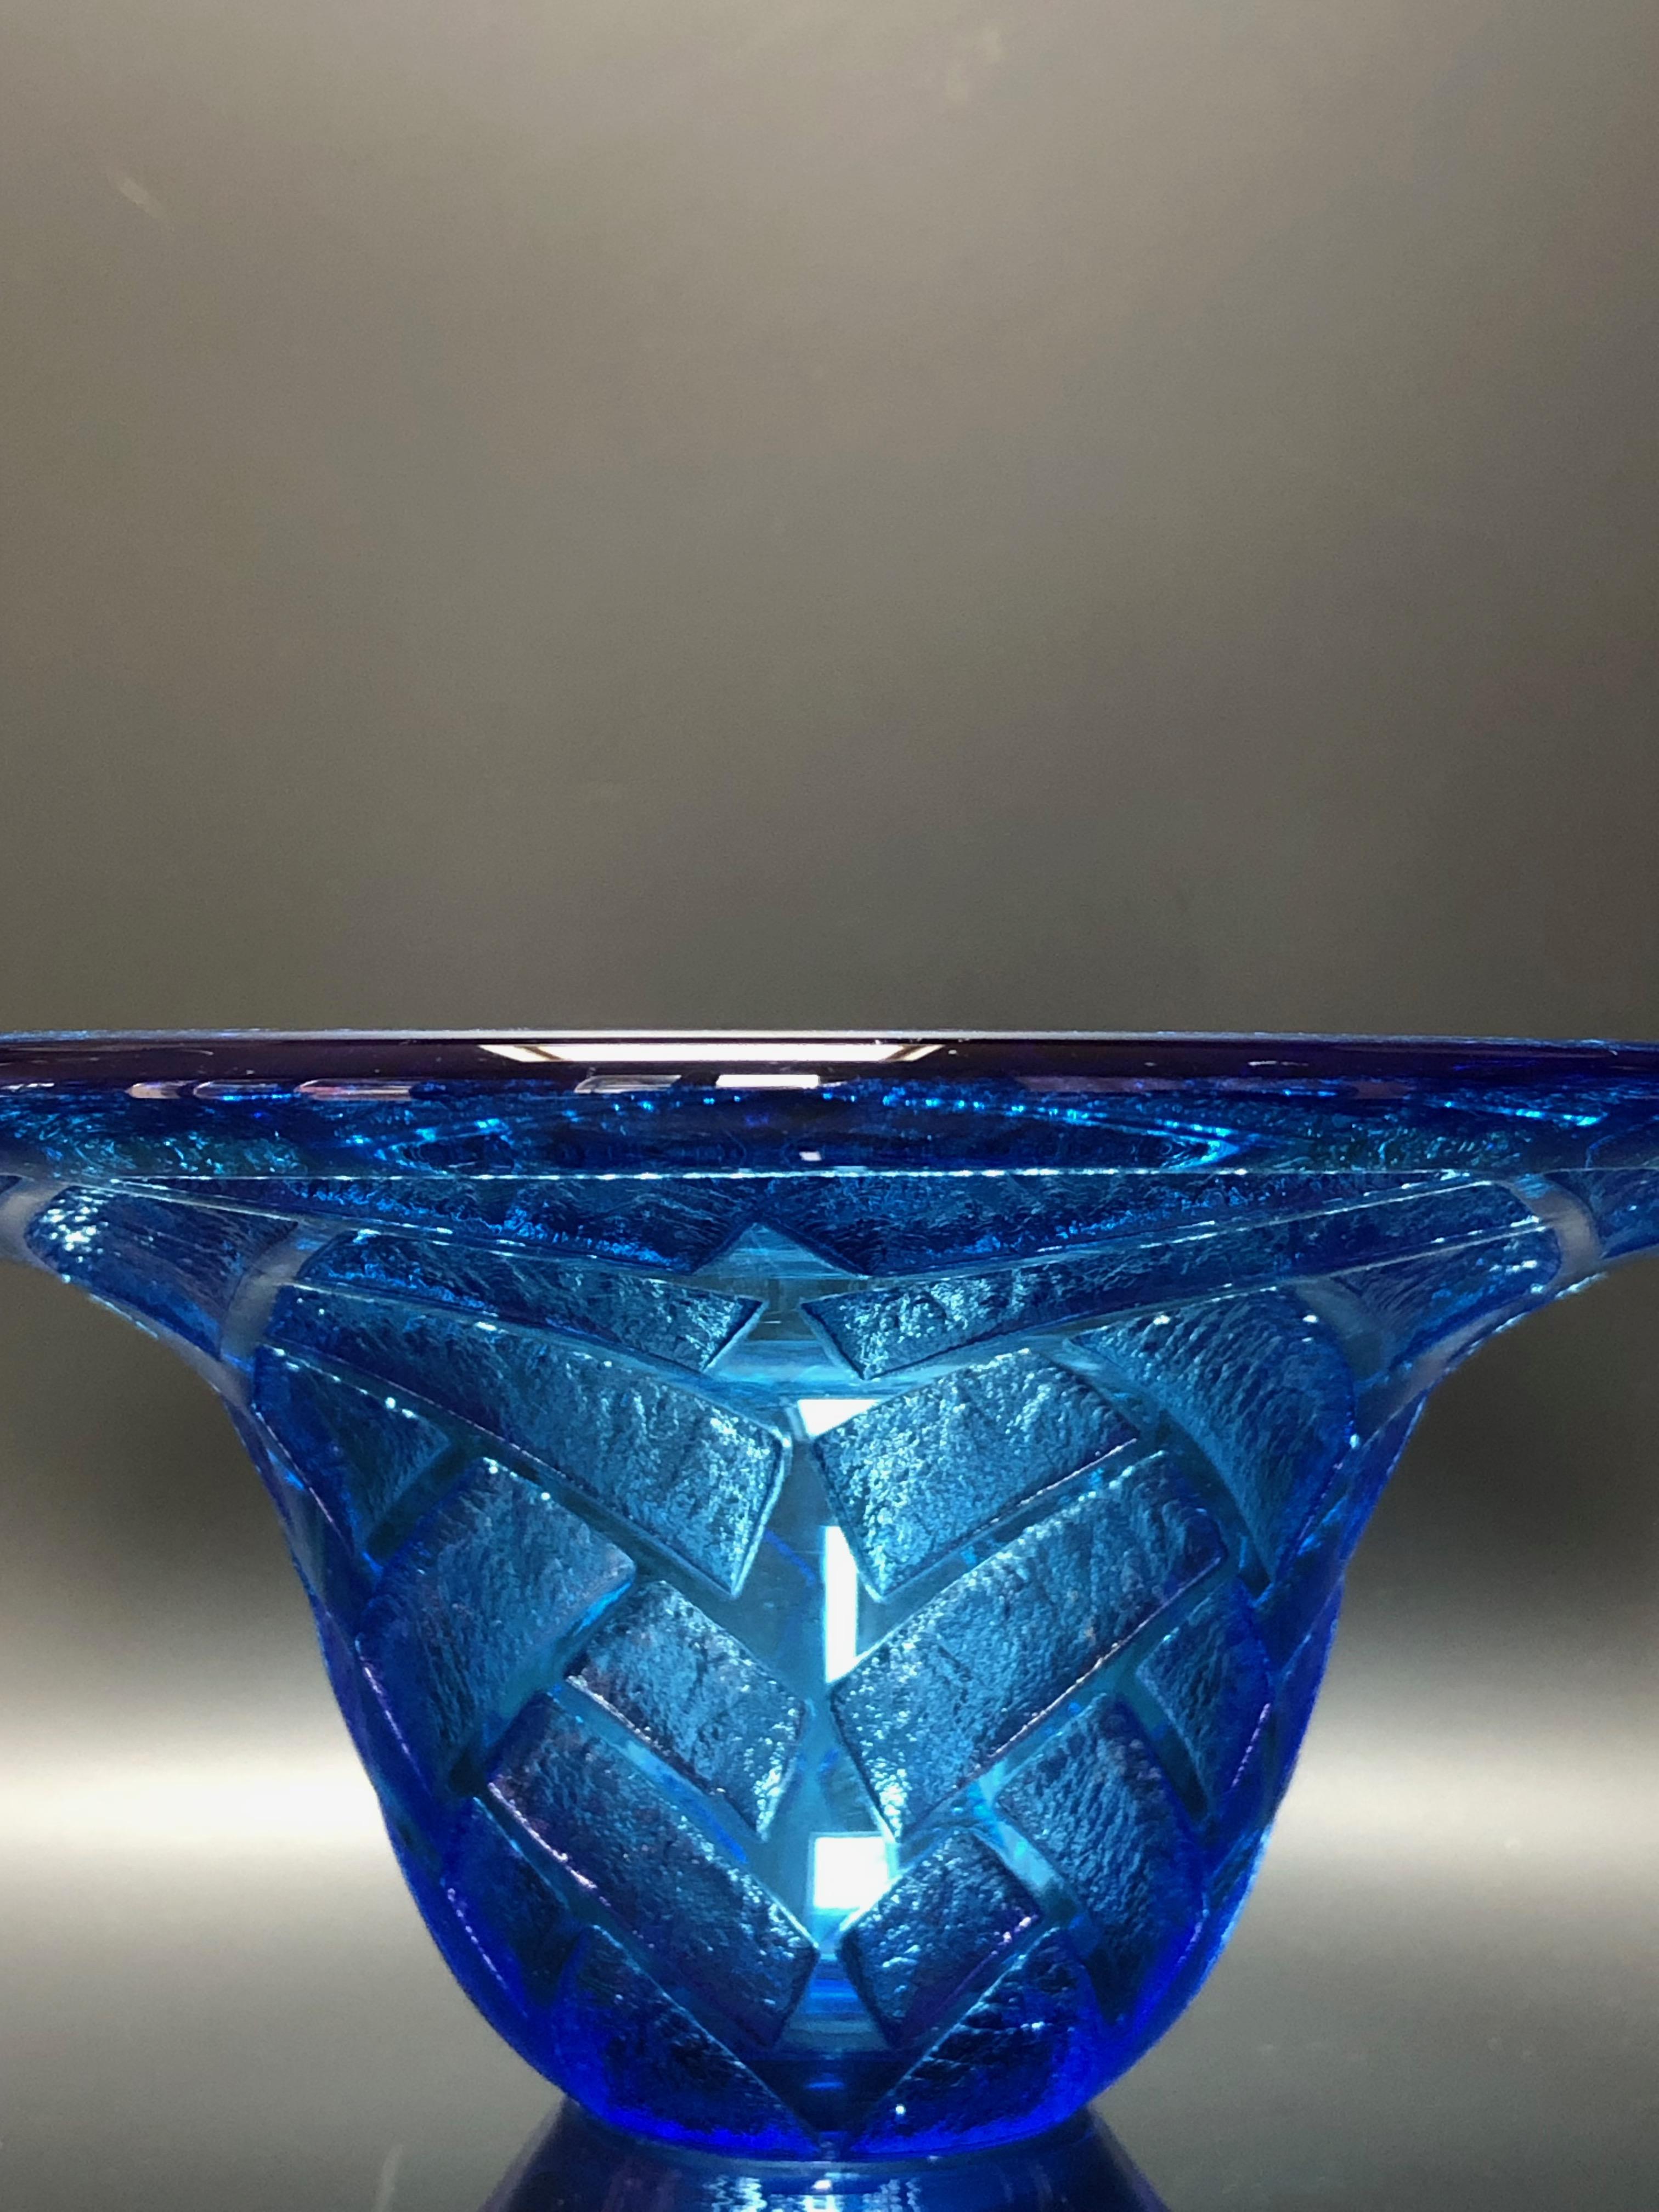 Blaue, säuregeätzte Tasse mit geometrischem Dekor, um 1930, signiert am Boden Daum Nancy France.
 1 kleiner Säurefehler an der Basis (Foto)


MATERIAL: Glas
Durchmesser: col 18,7 cm 
Durchmesser Basis 6,2 cm
Höhe: 10,3 cm
Gewicht: 800 Gramm

Daum